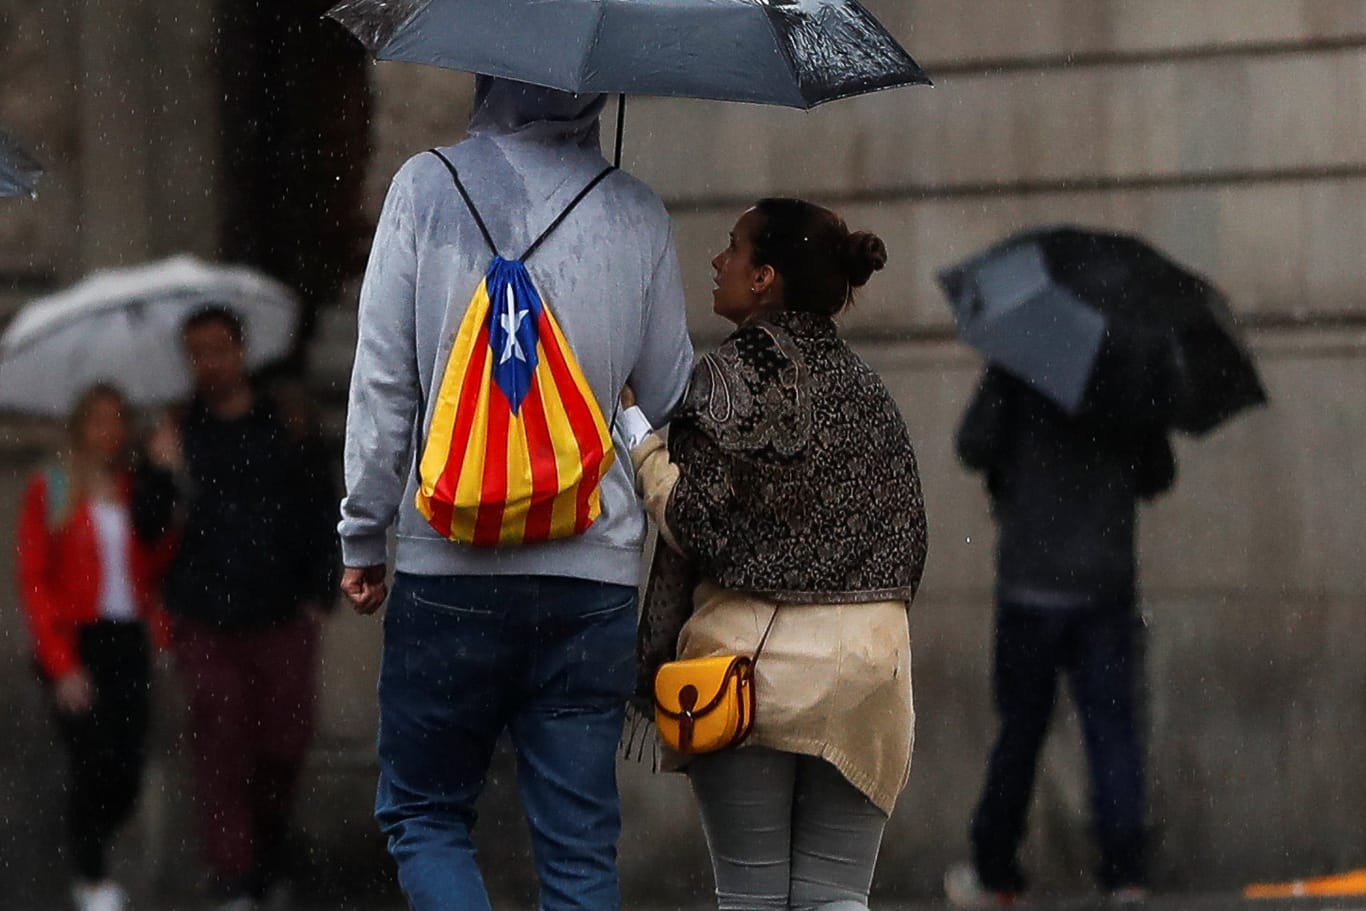 Trübe Aussichten in Barcelona: Ein Mann mit einem Rucksack in den Farben der katalanischen Separatisten läuft durch den Regen.